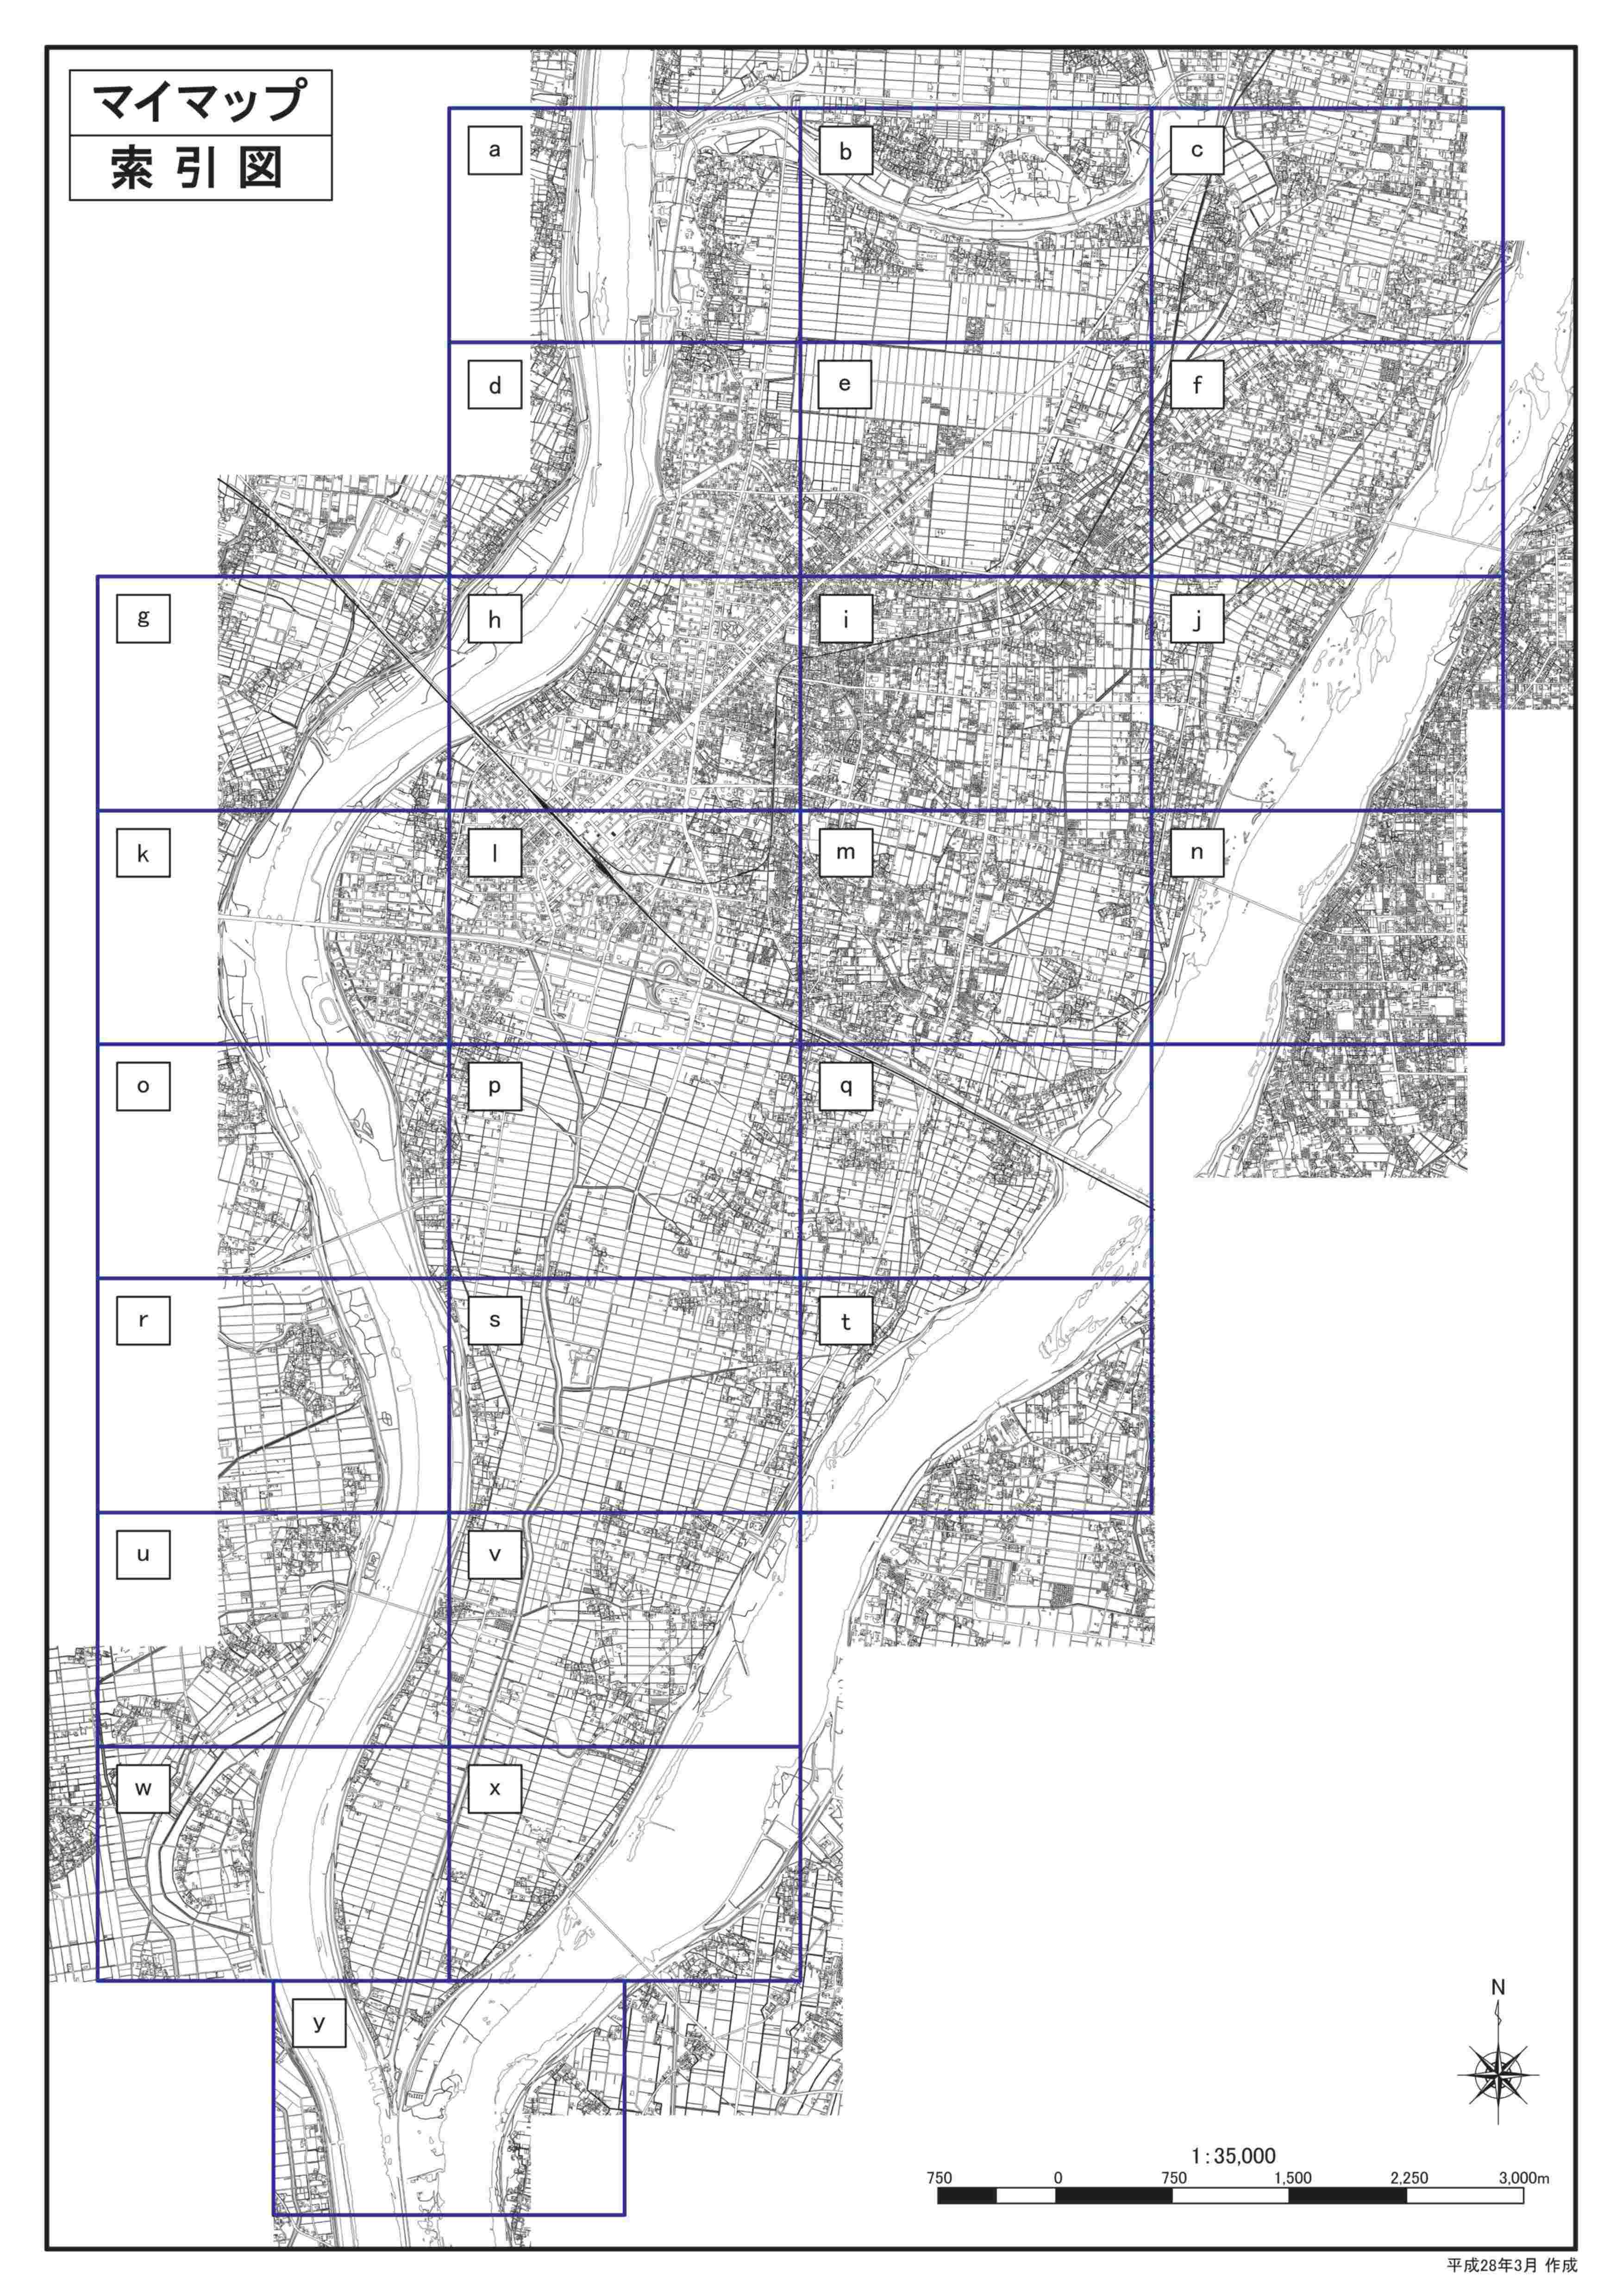 長良川洪水ハザードマップ想定最大規模版（詳細図）の画像